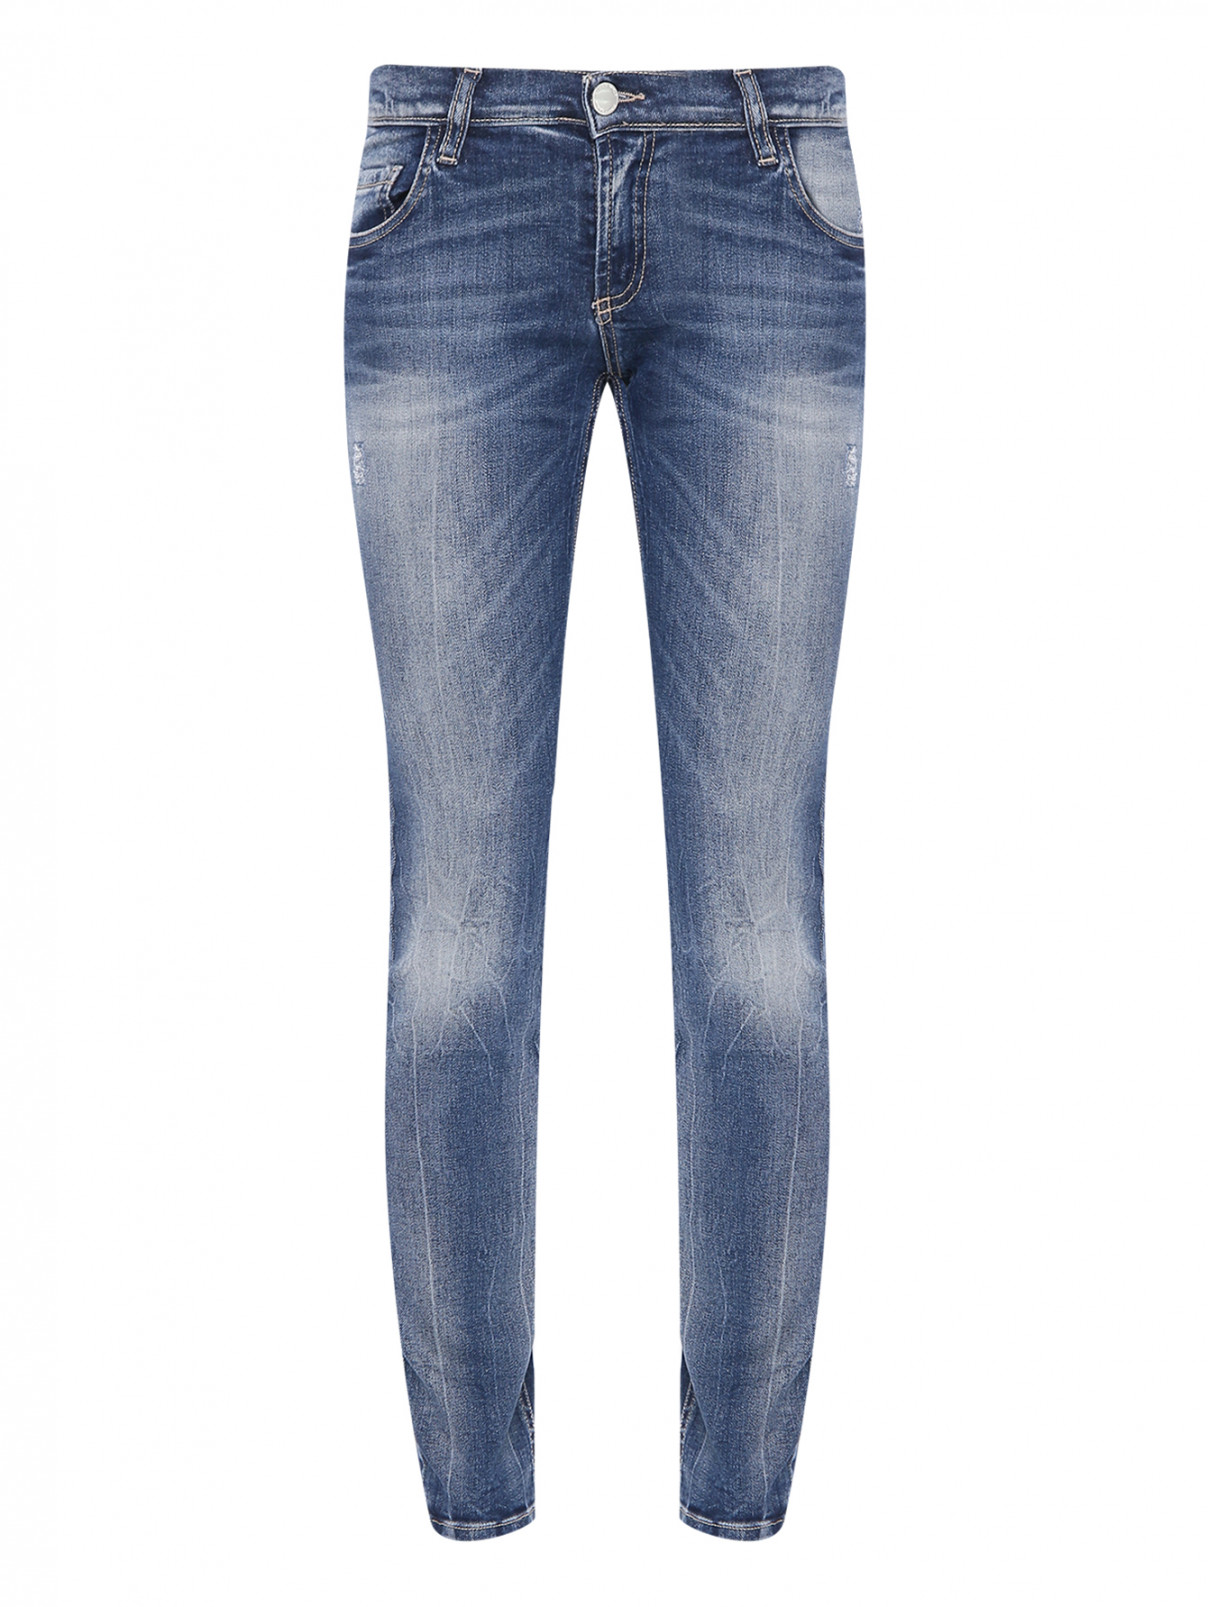 Прямые джинсы с вышивкой Frankie Morello  –  Общий вид  – Цвет:  Синий